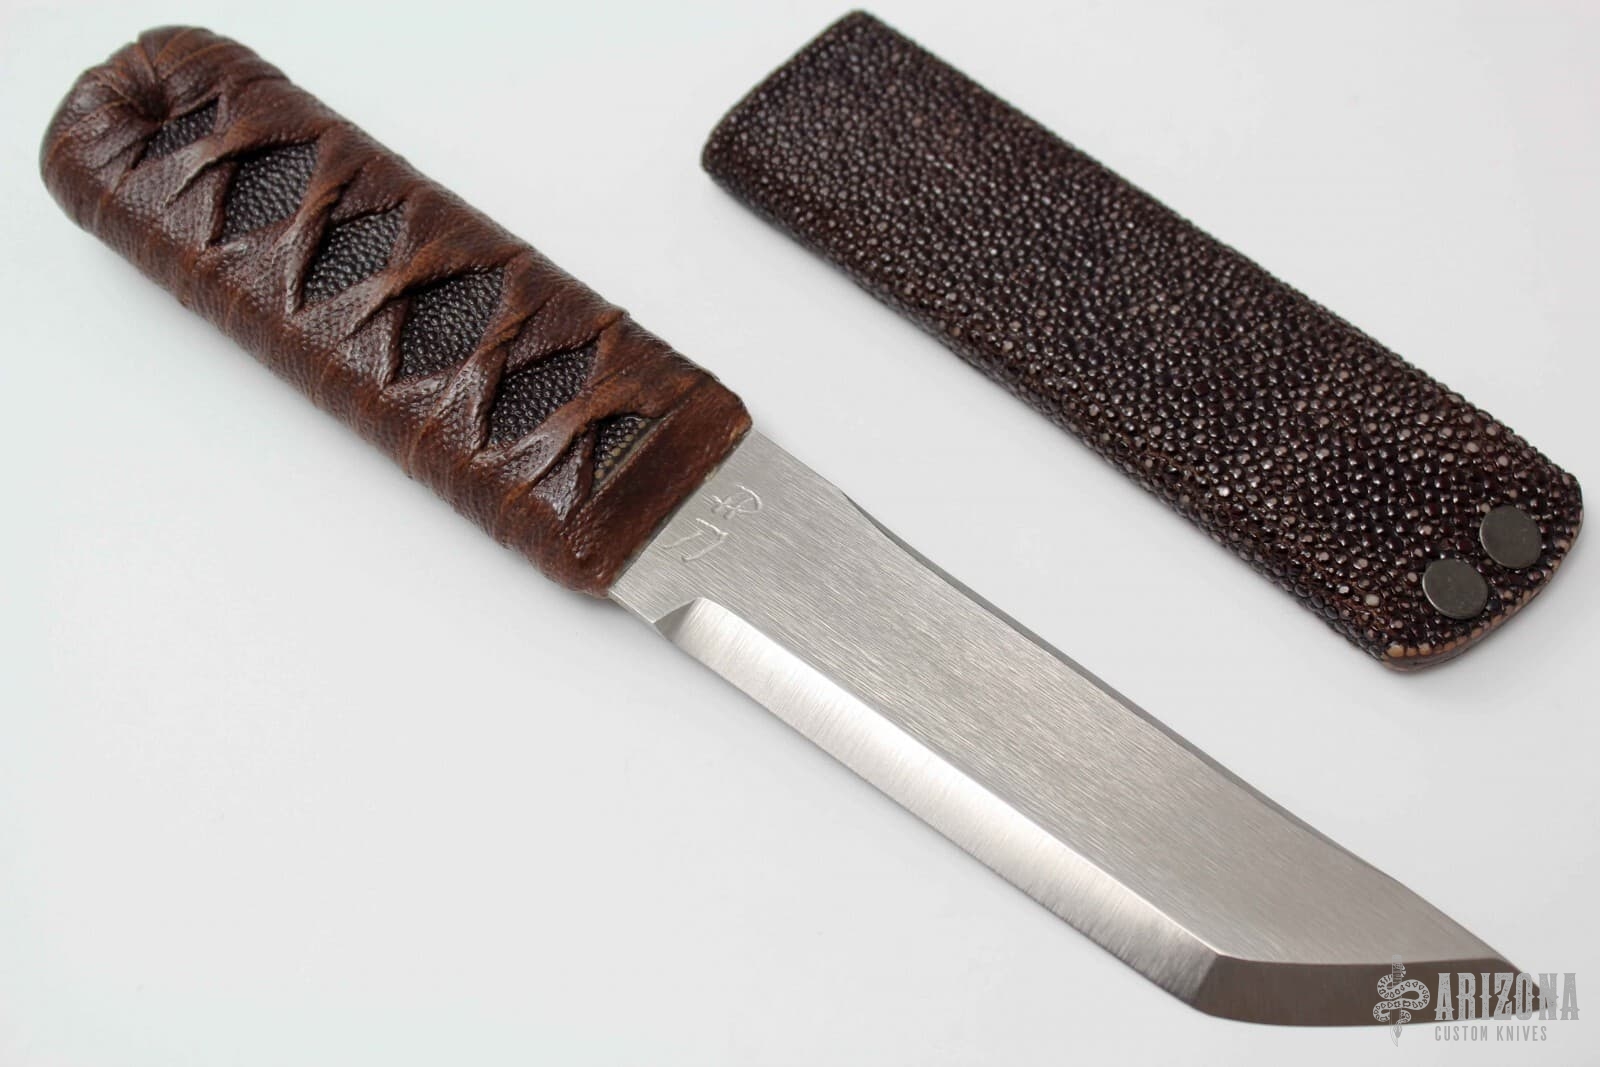 Kwaiken | Arizona Custom Knives